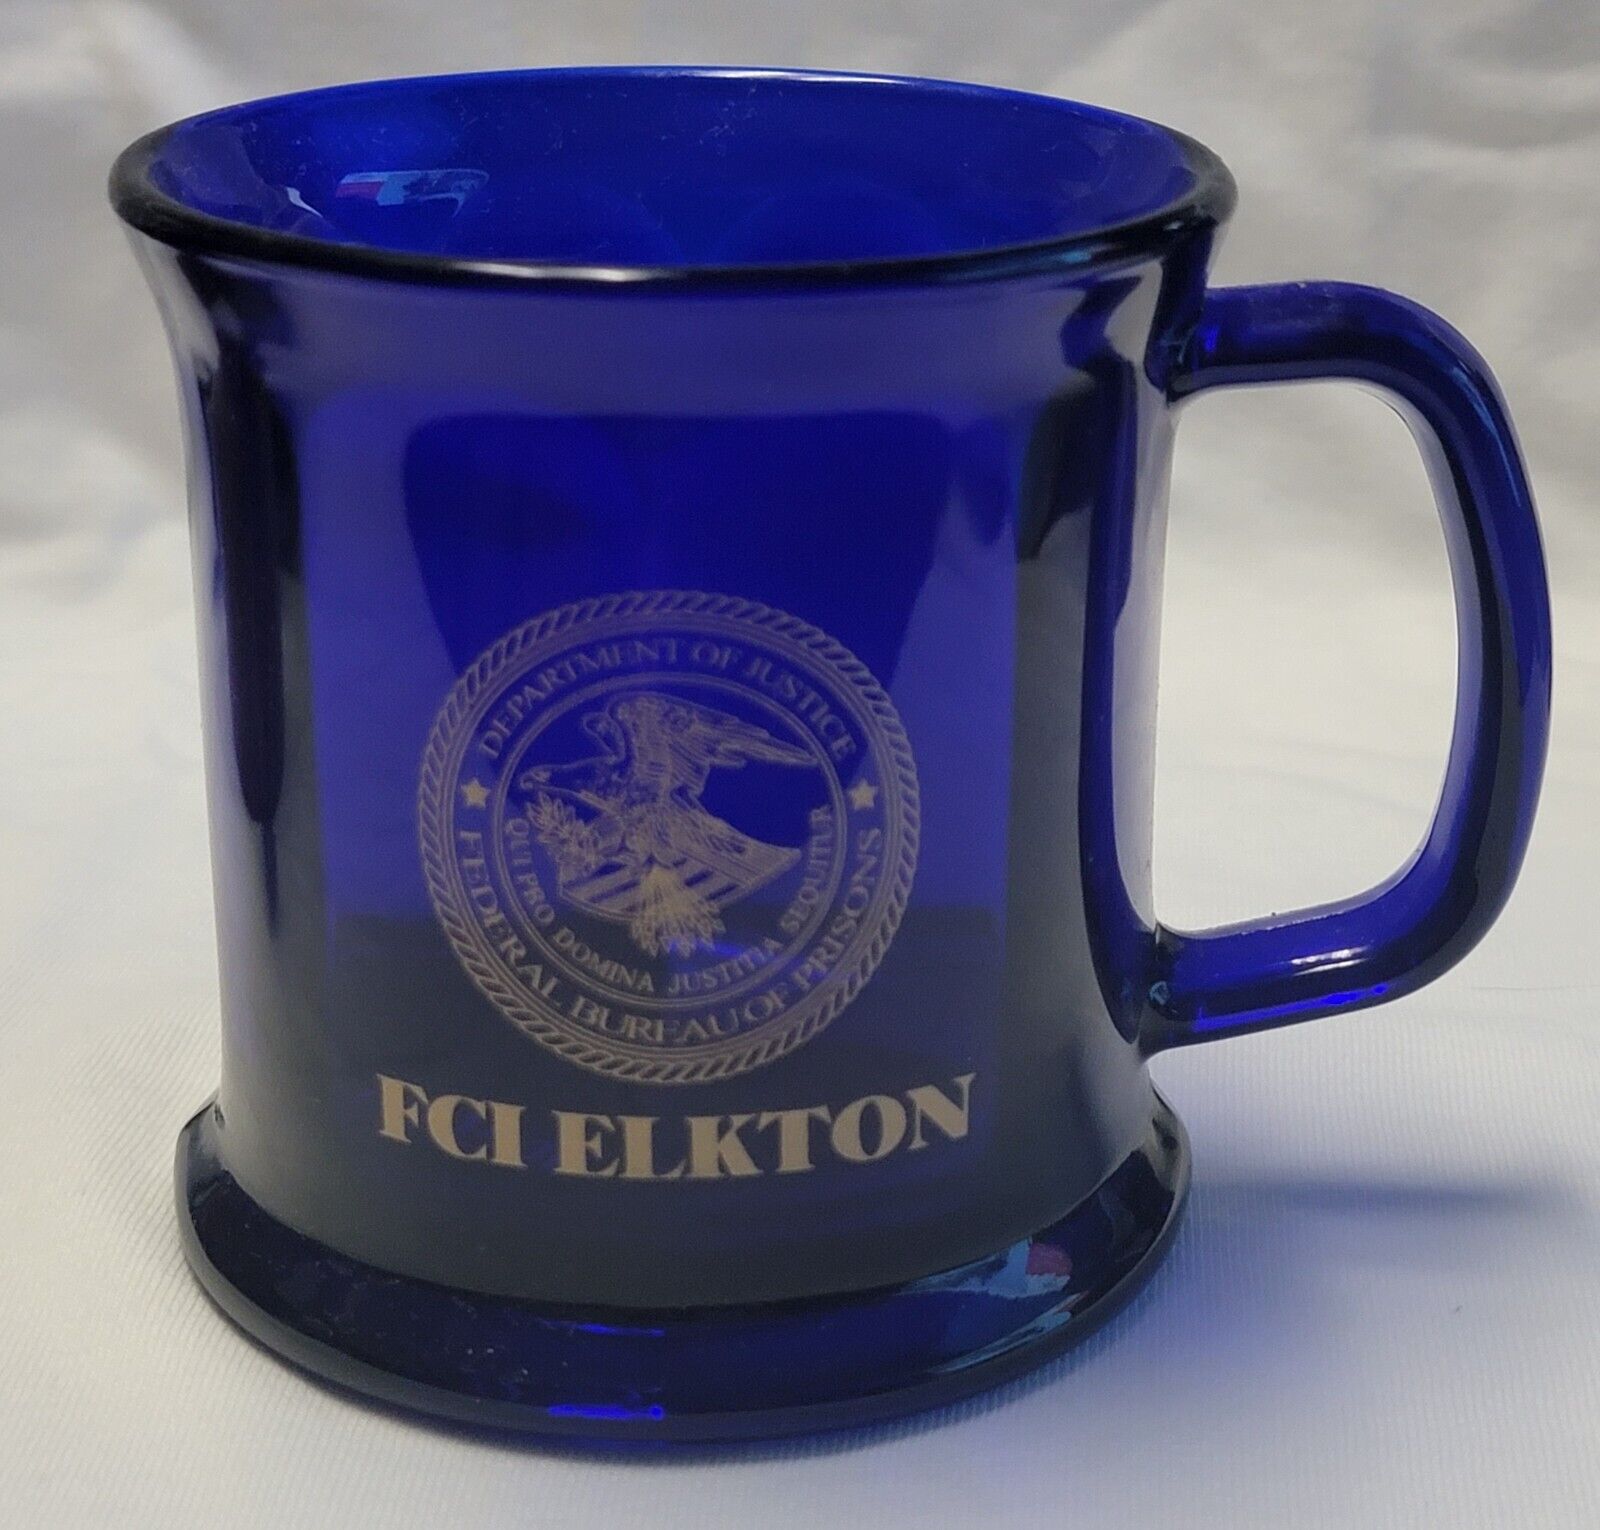 DOJ BOP FEDERAL BUREAU OF PRISONS FCI ELKTON LISBON OHIO CLEAR BLUE COFFEE MUG